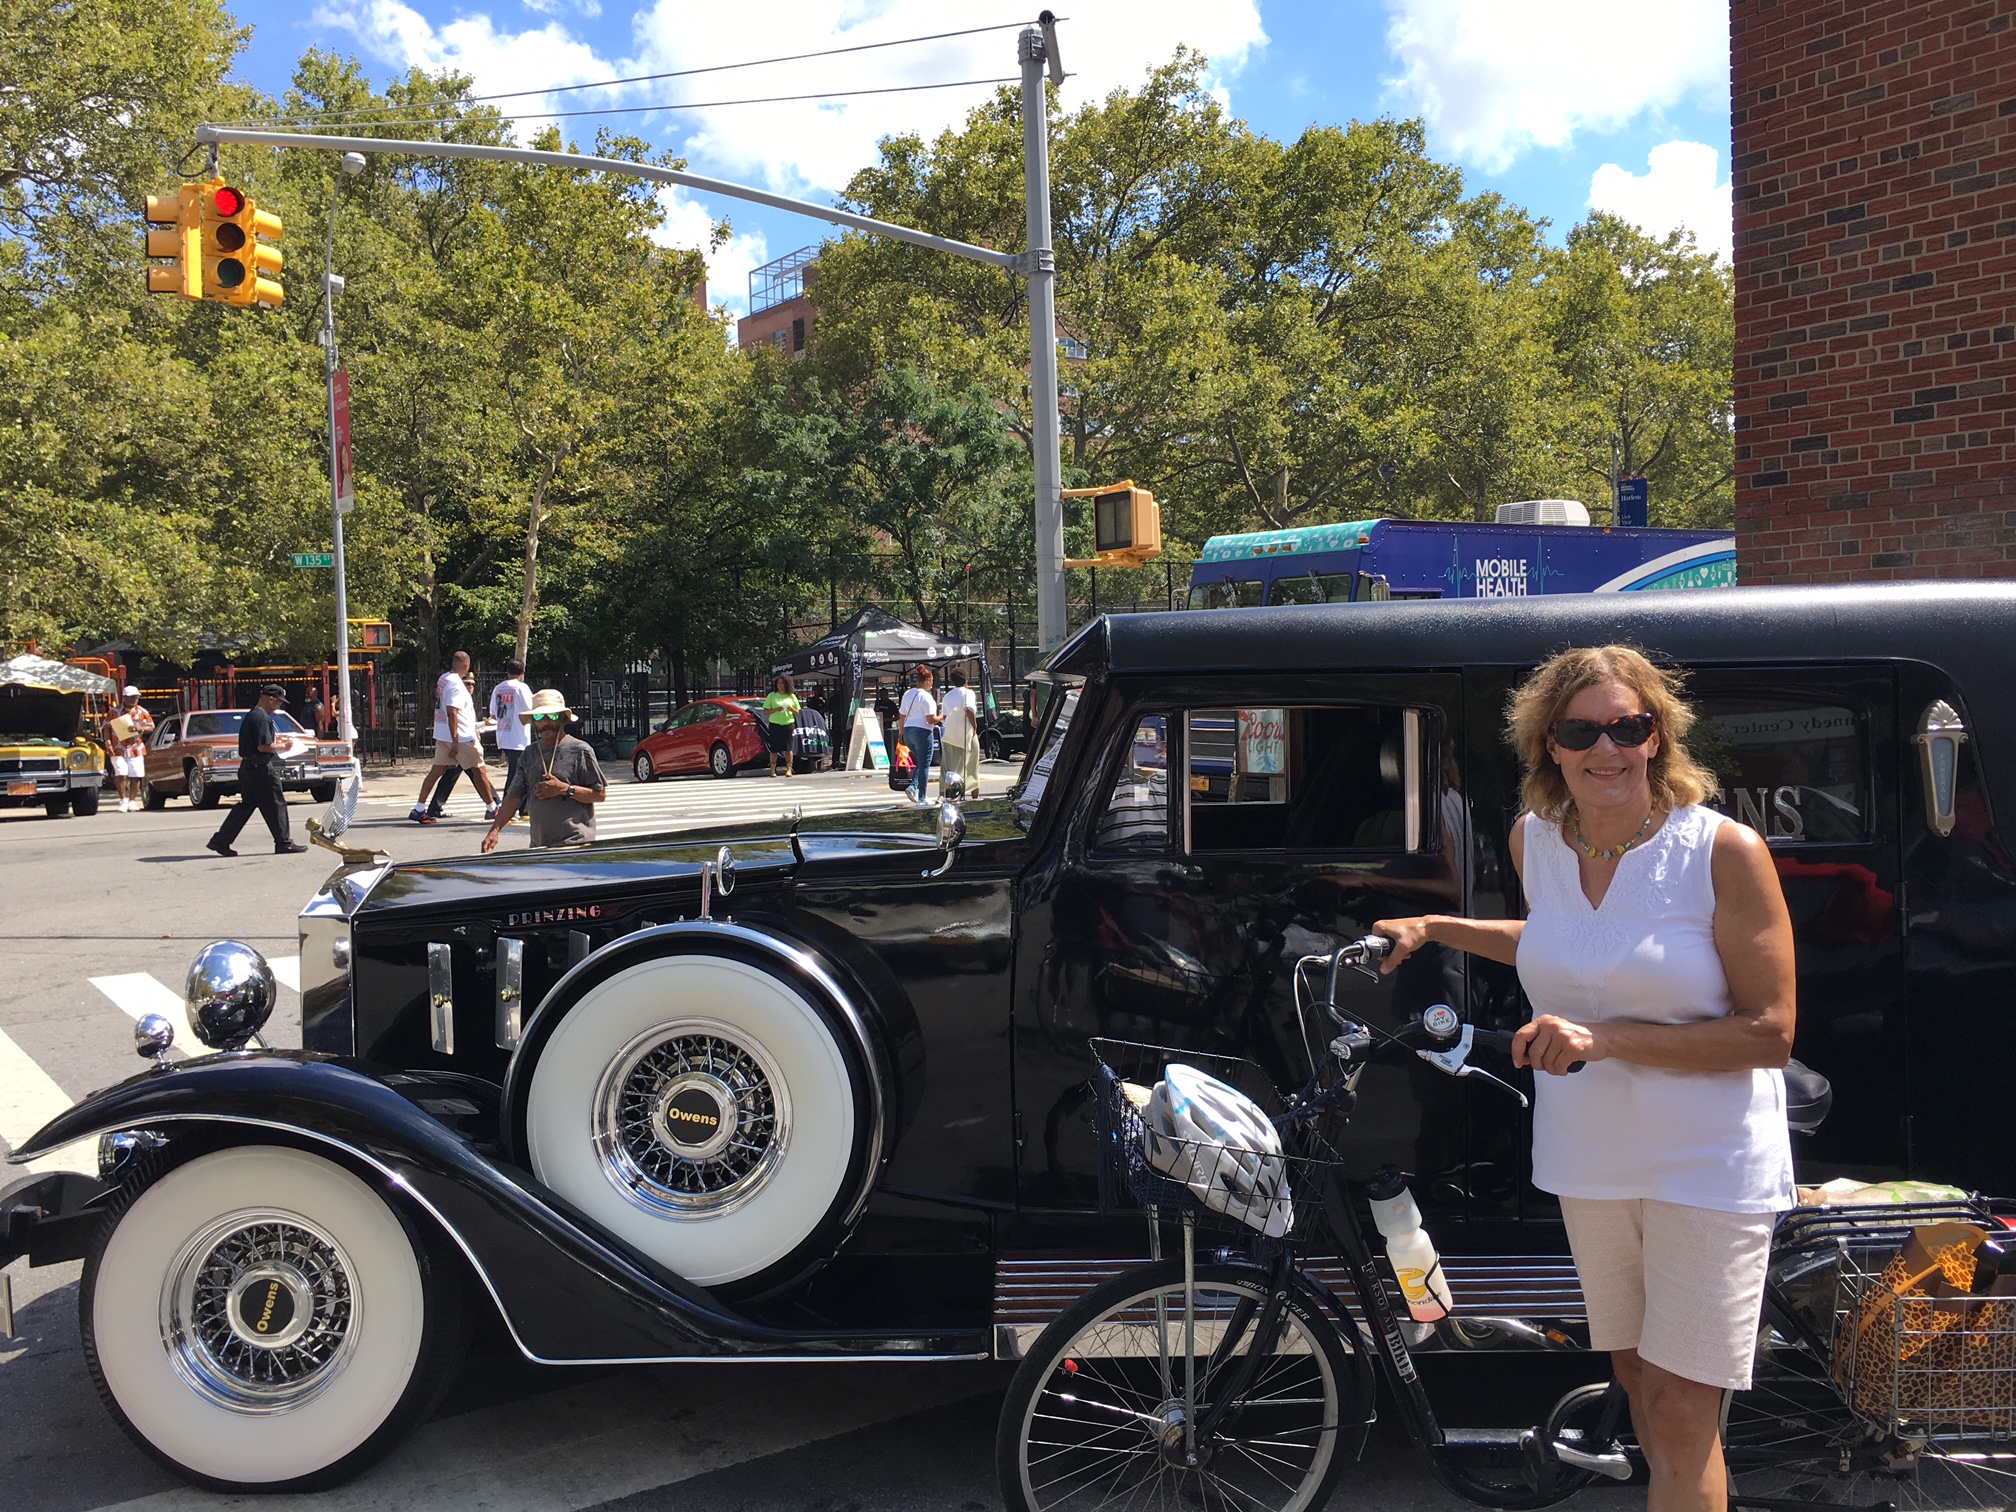 Lorraine Gudas at Harlem Day, August 21, 2016